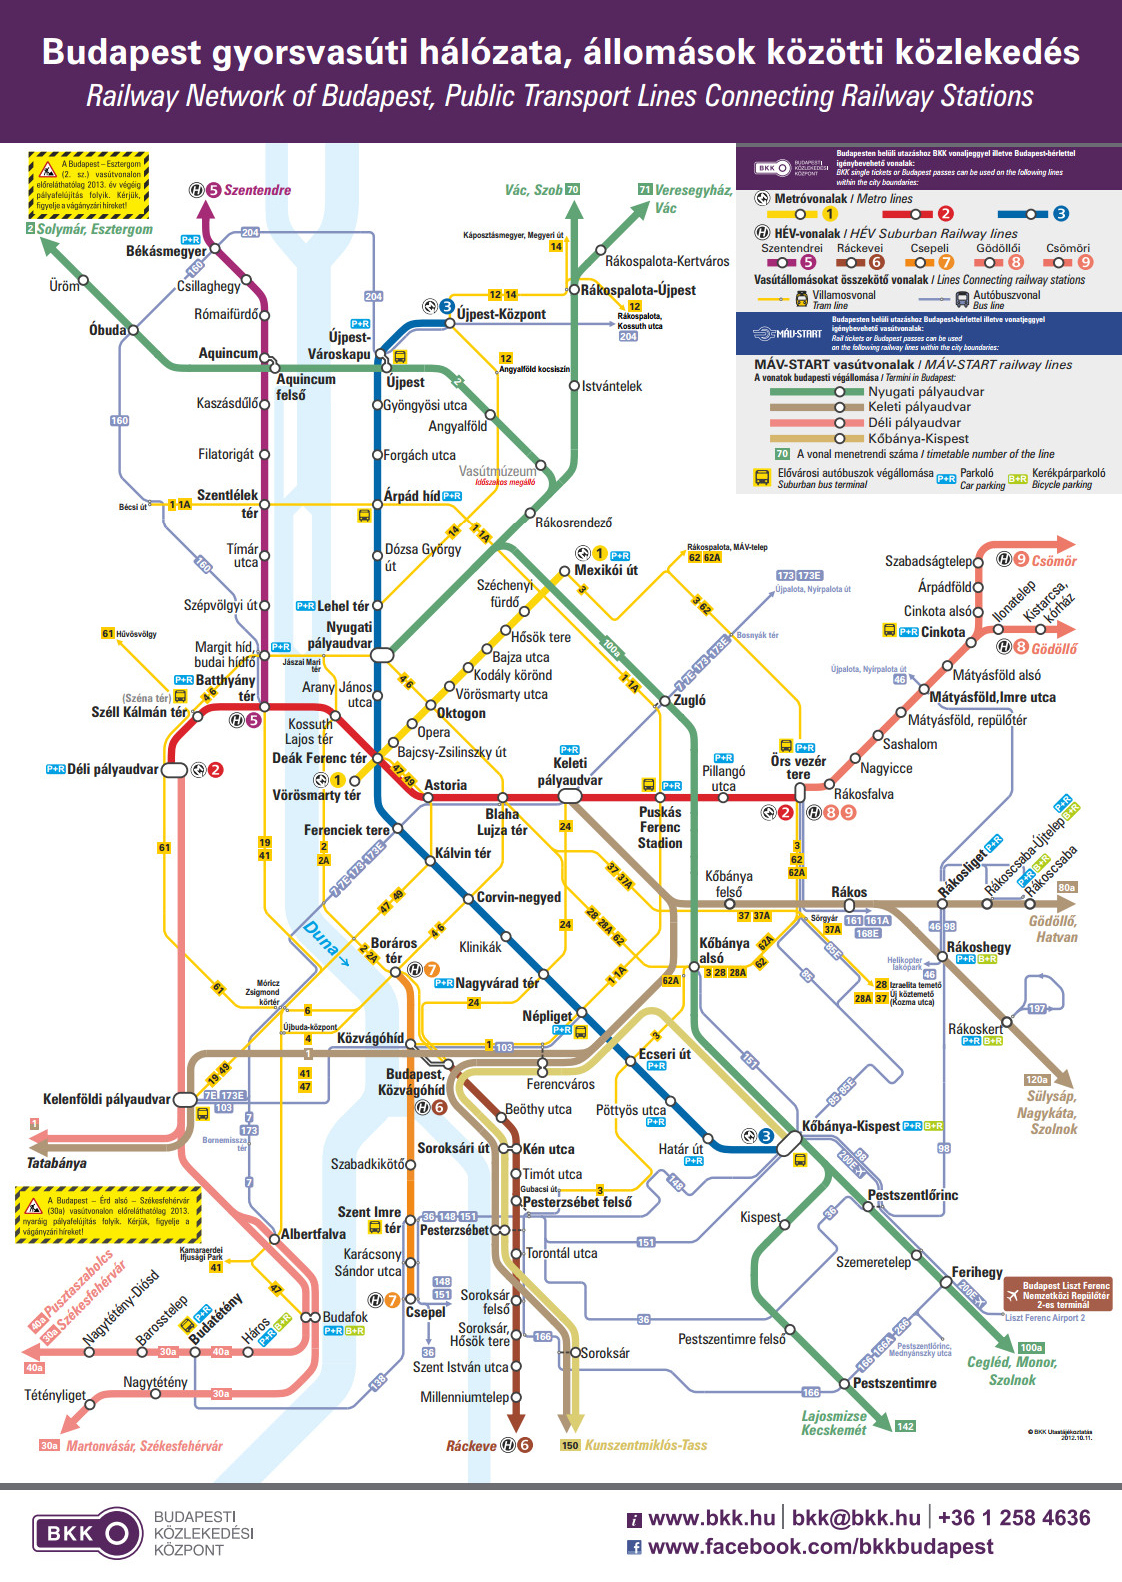 Budapest gyorsvasúti hálózata, állomások közötti közlekedésének új spagettitérképe (forrás: bkk.hu)<br>A képre kattintva galéria nyílik